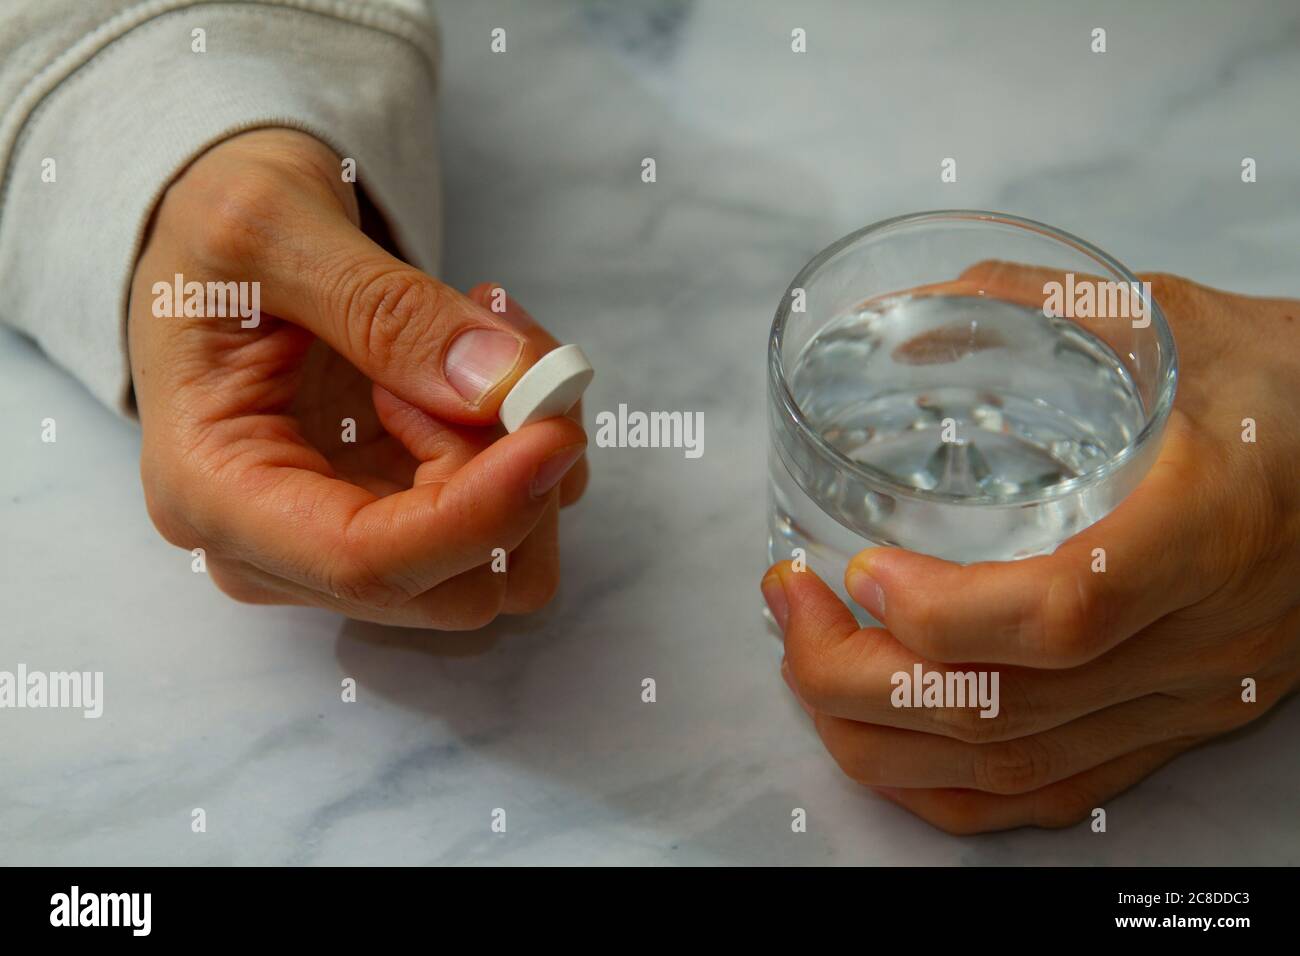 Eine kaukasische Frau hält eine weiße Pille in der einen Hand und hält ein Glas Wasser fest. Sie ist dabei, die Pille einzunehmen. Stockfoto